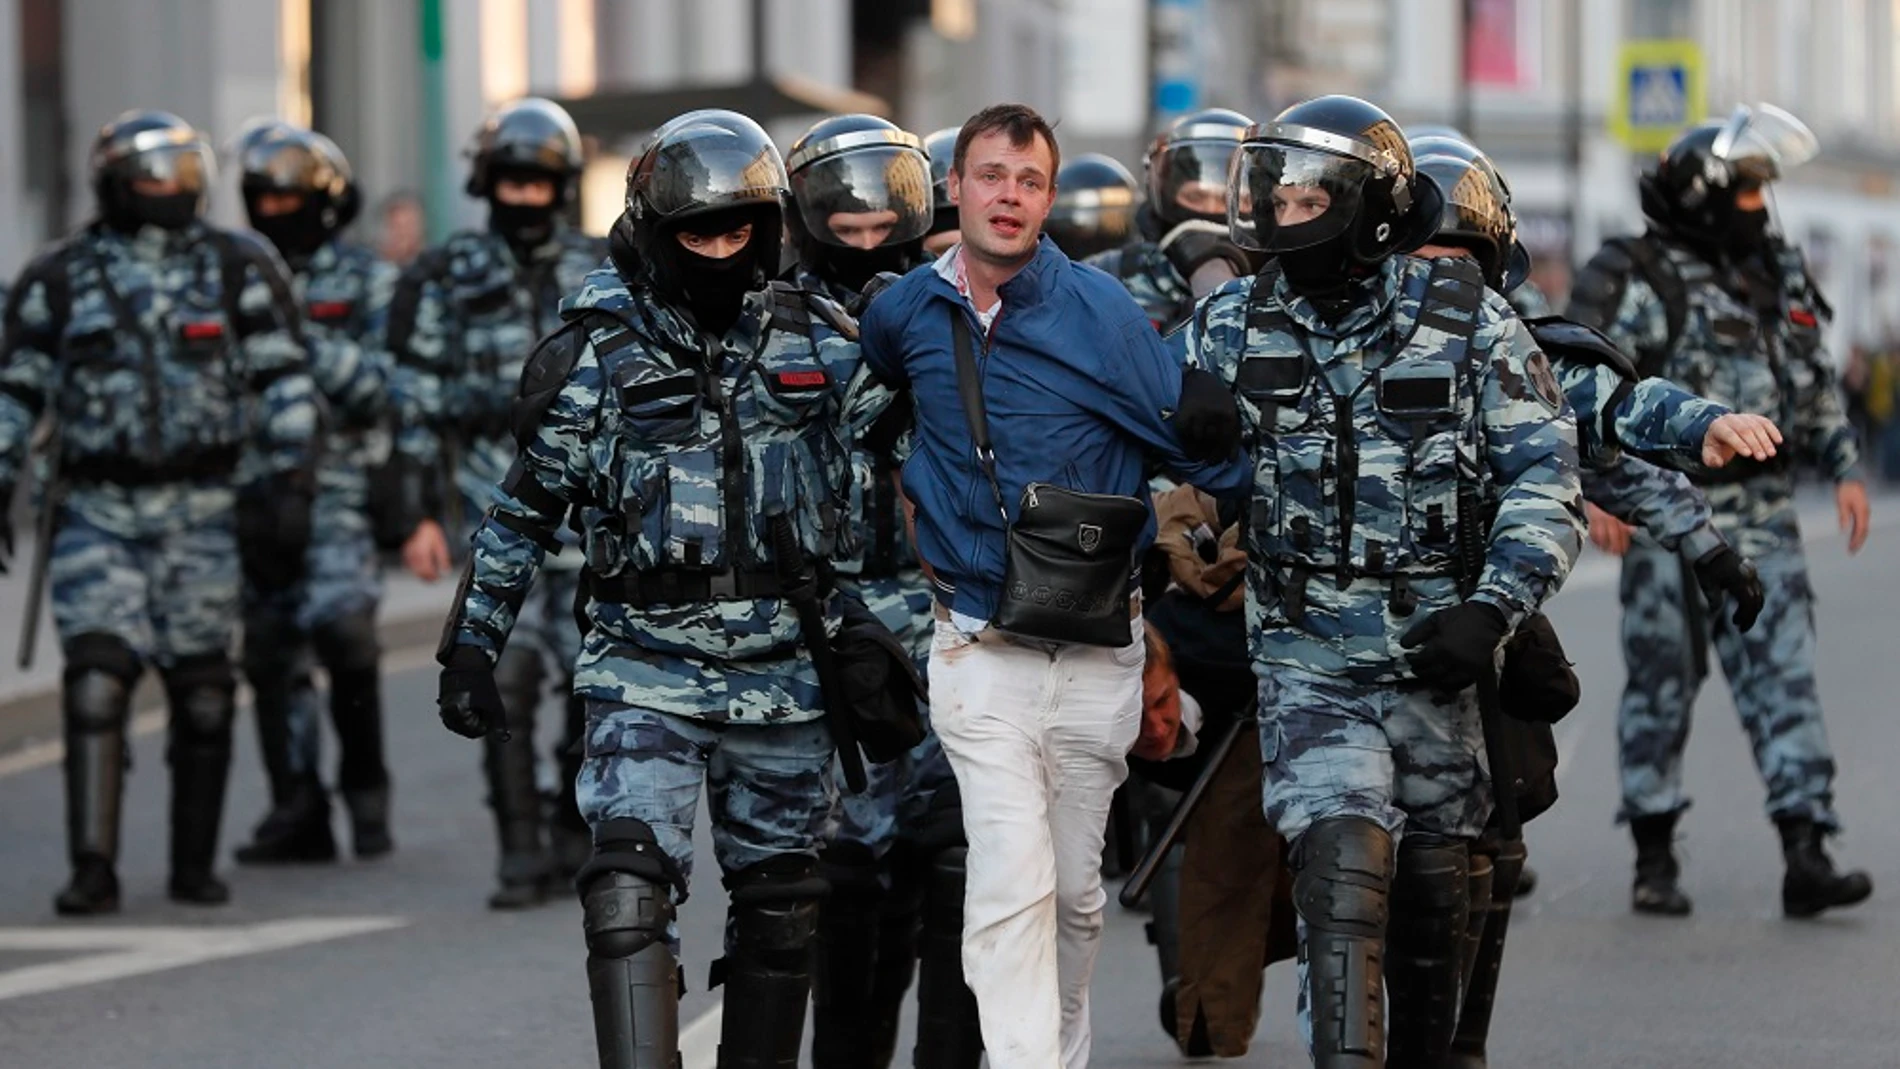 Represión policial en las protestas en Moscú